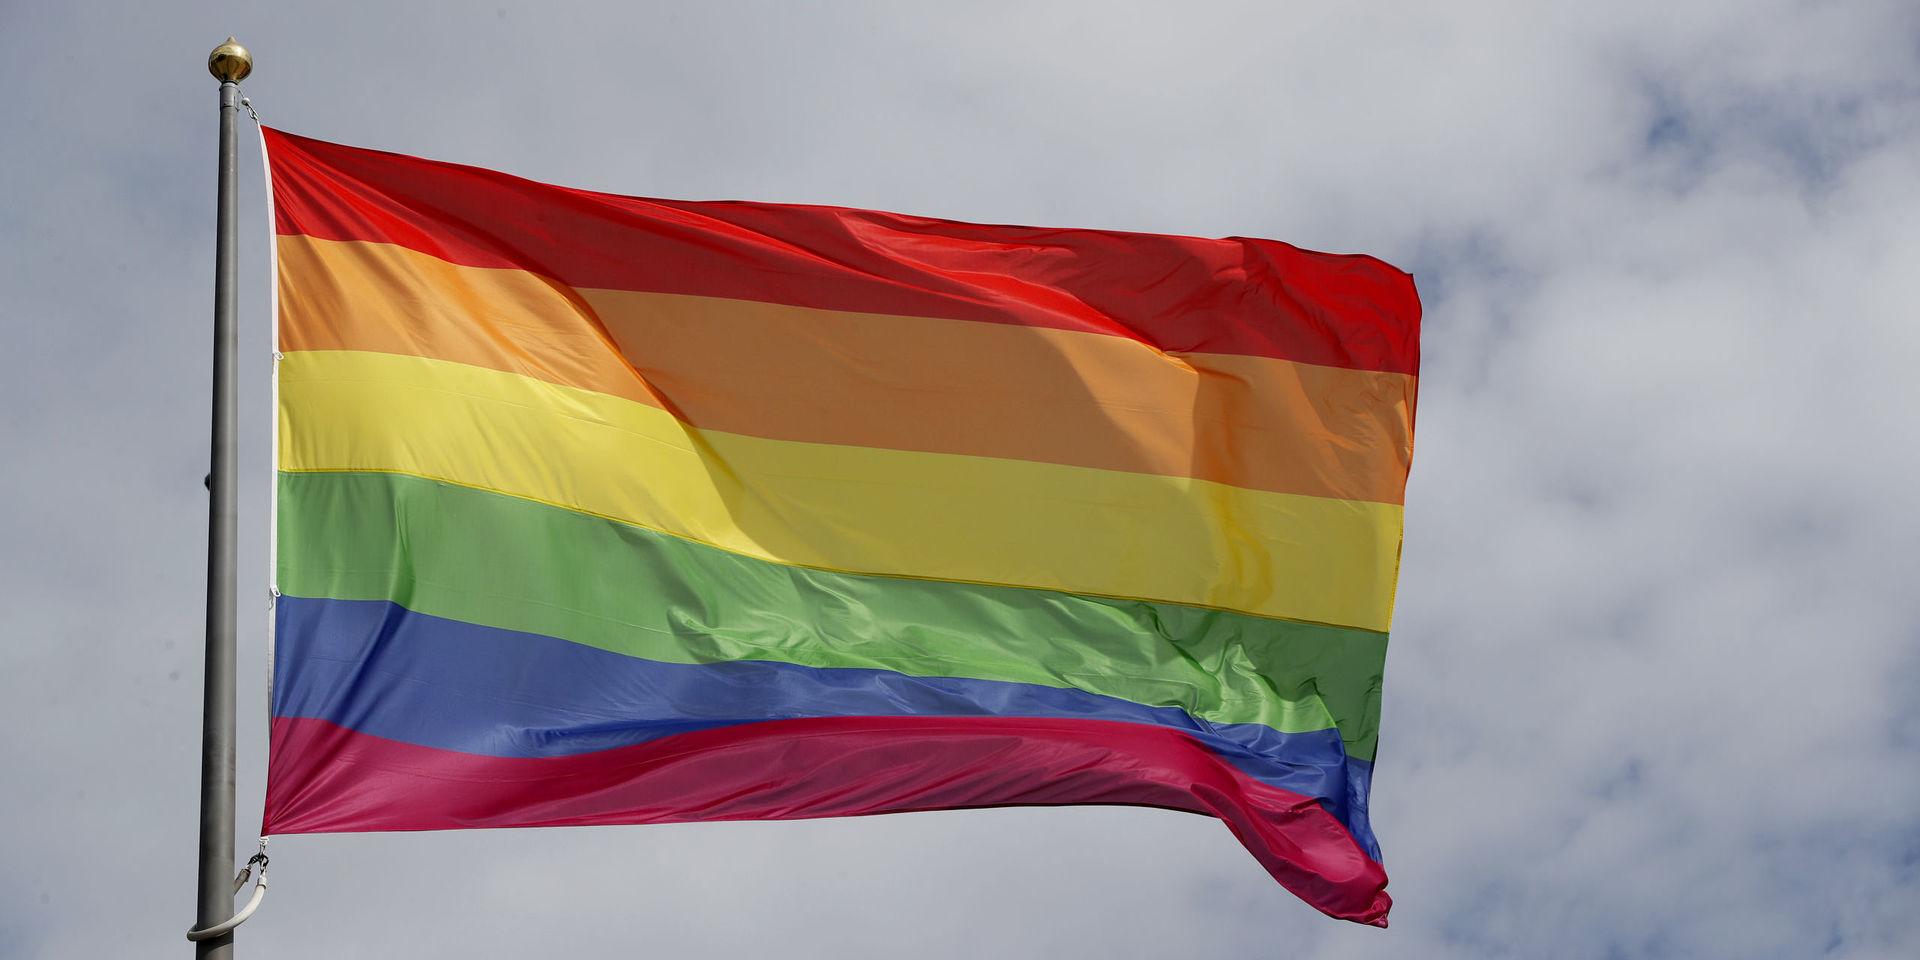 Regnbågsflaggor är inte att betrakta som politiska symboler, enligt ett nytt beslut.